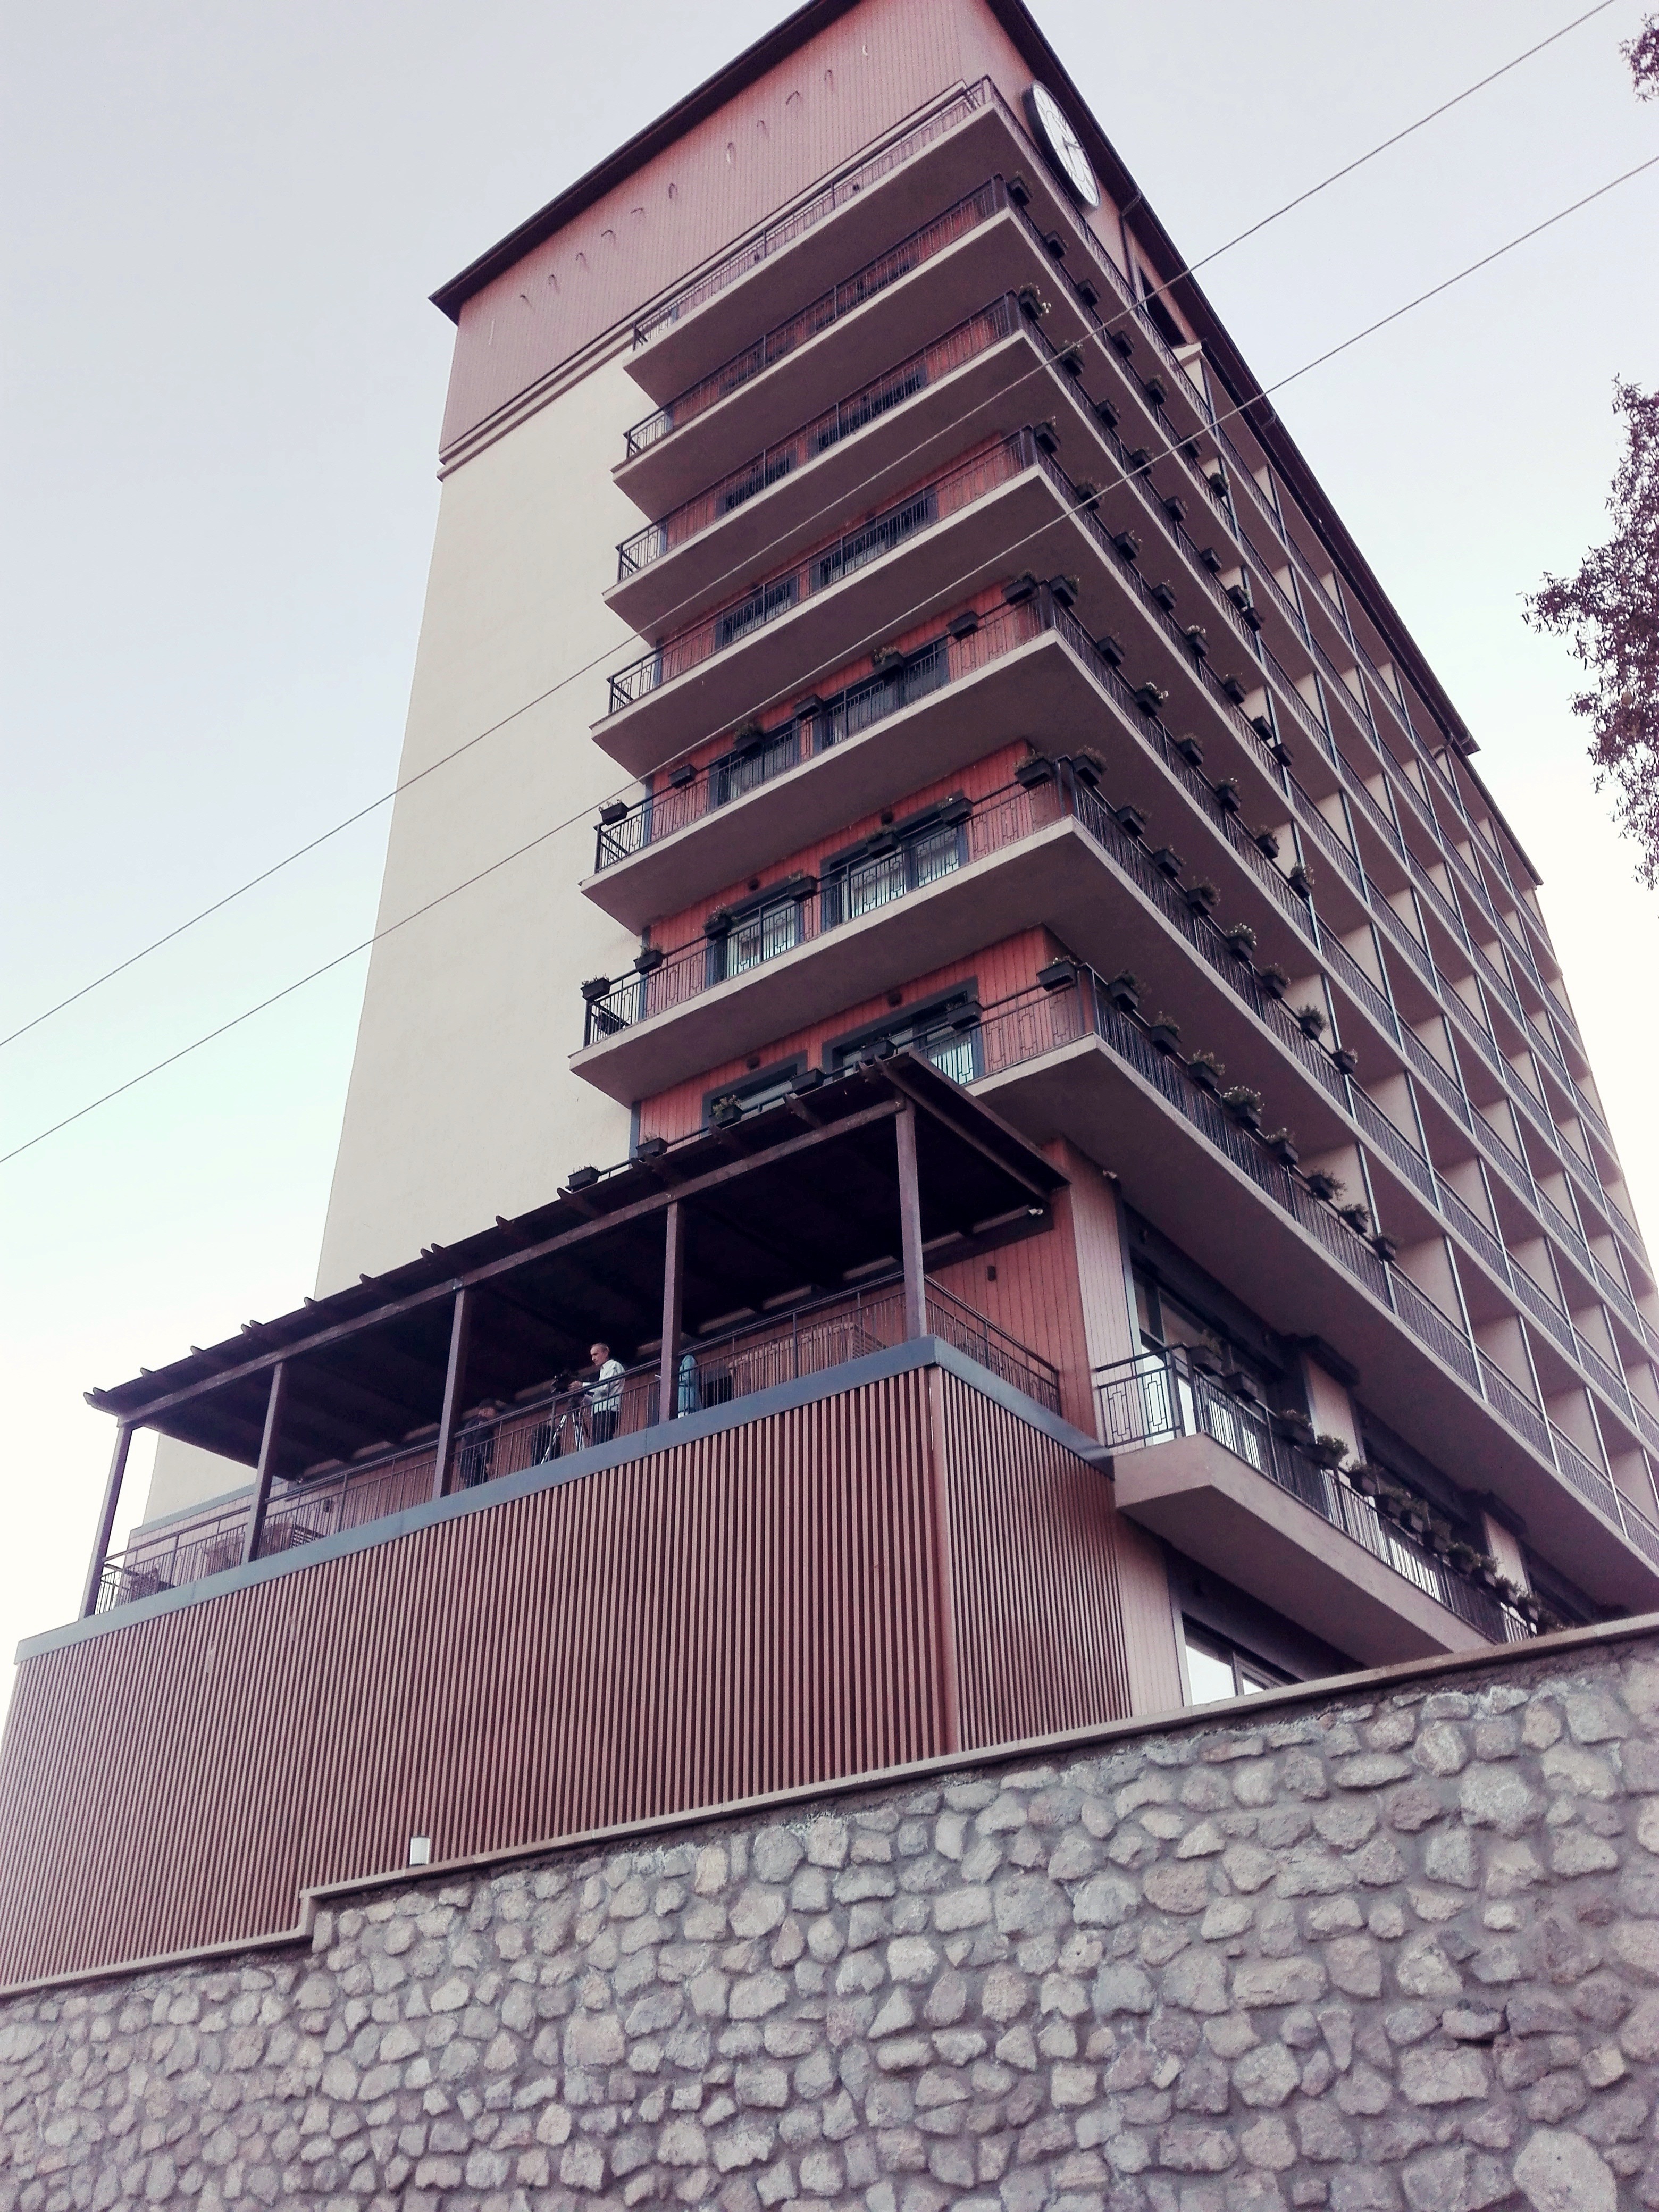 Susa egyik hotele. Jelenleg hármat állítottak helyre és leginkább a város felújításában résztvevő dolgozók laknak benne.